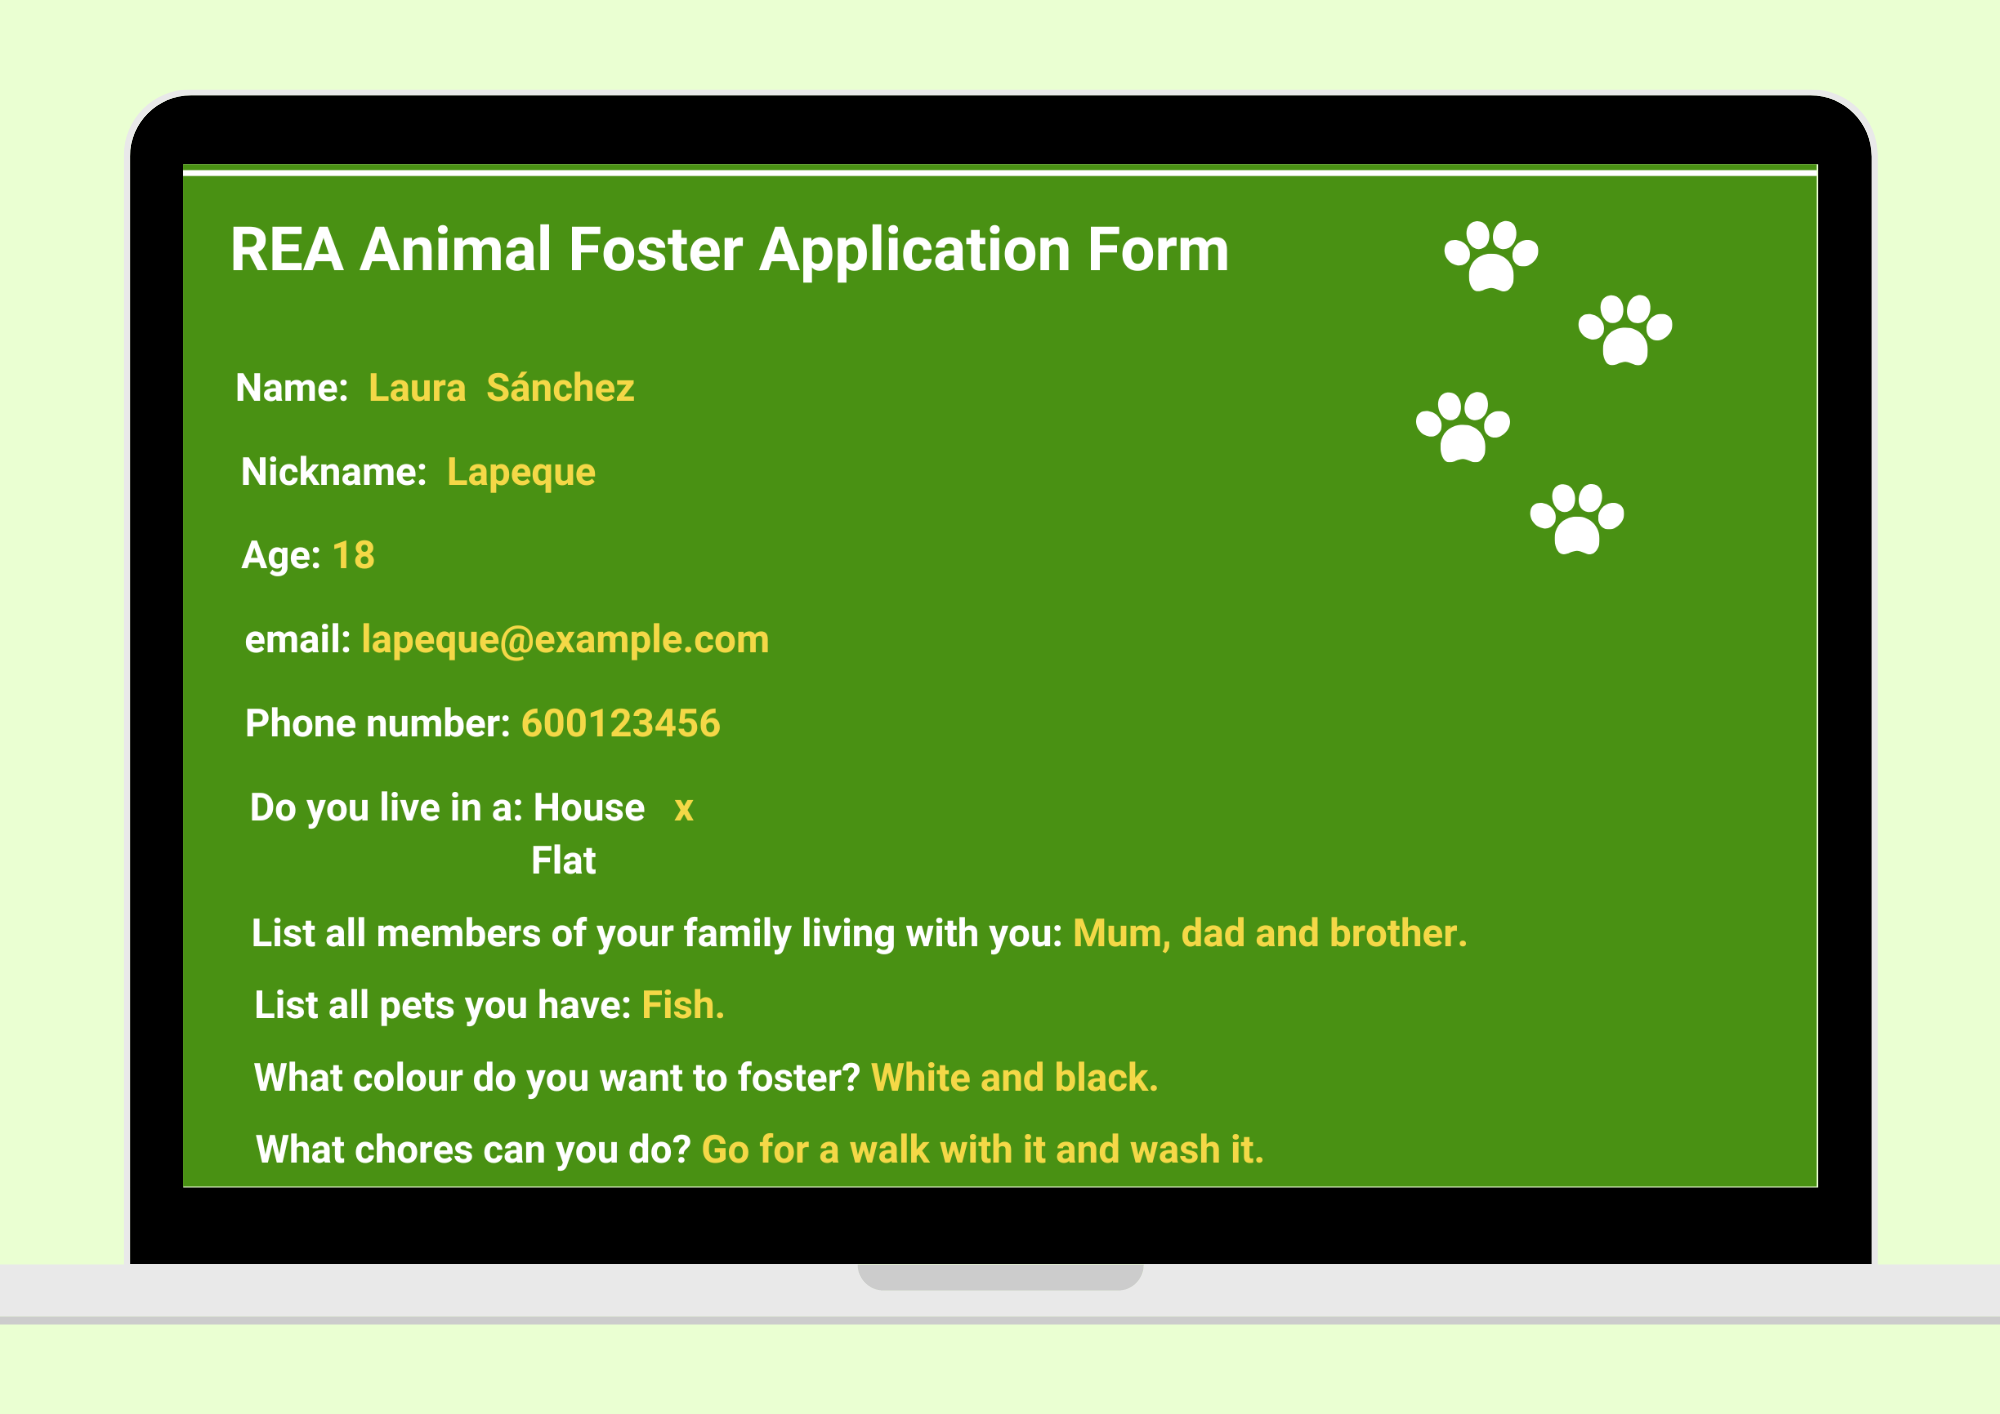 En la imagen puedes ver un formulario de solicitud de aocgida de animales en el que aprecen rellenos los diferentes campos que se recogen